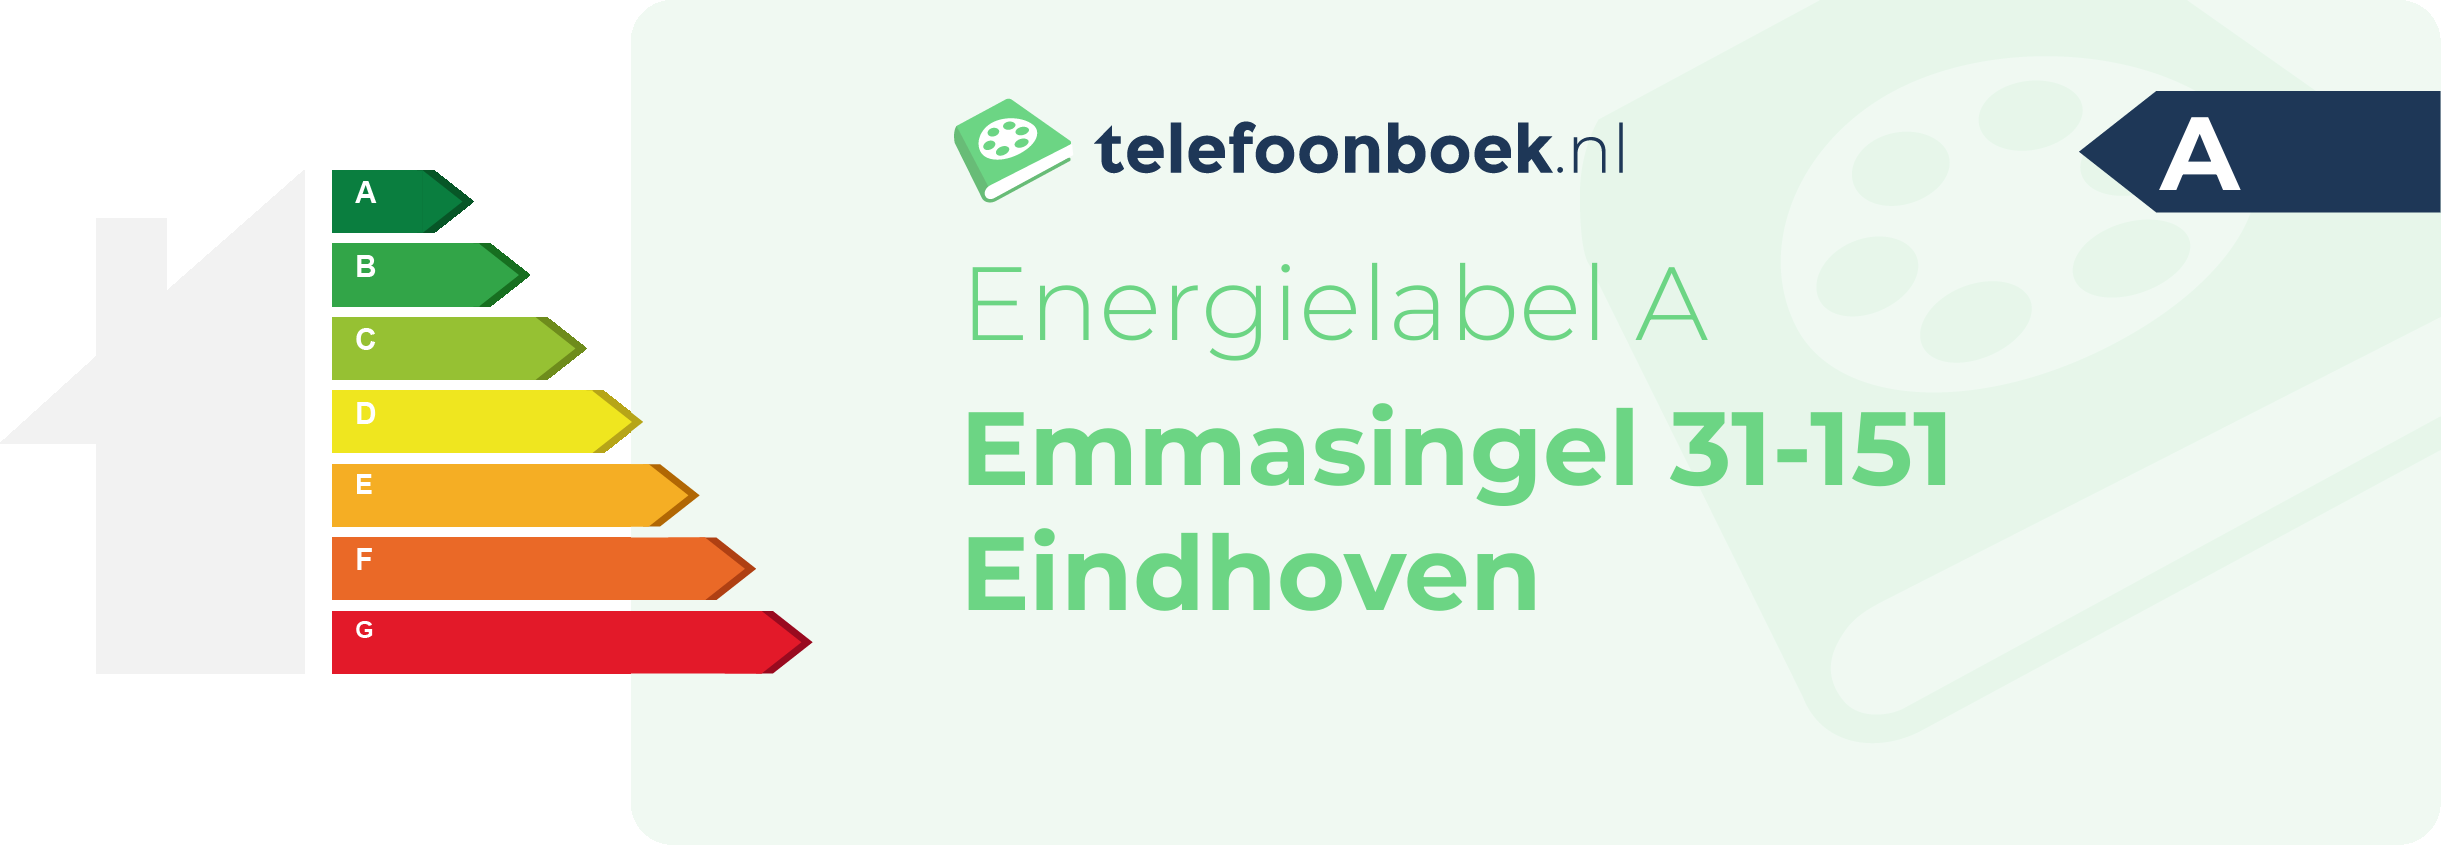 Energielabel Emmasingel 31-151 Eindhoven